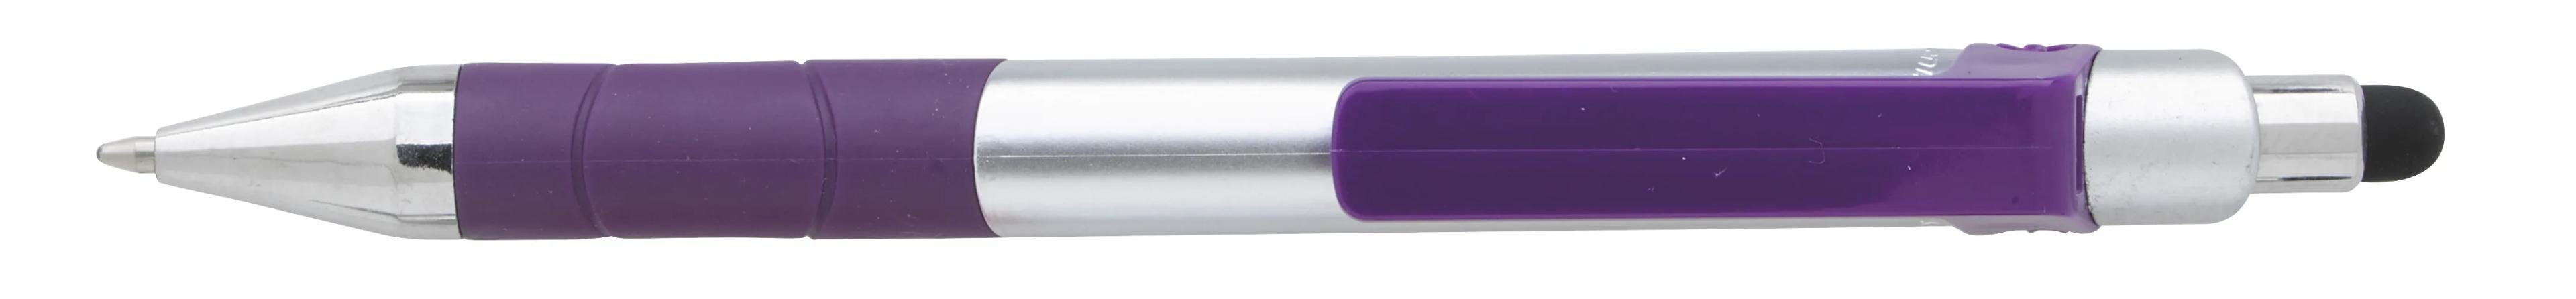 Souvenir® Rize Stylus Pen 14 of 28